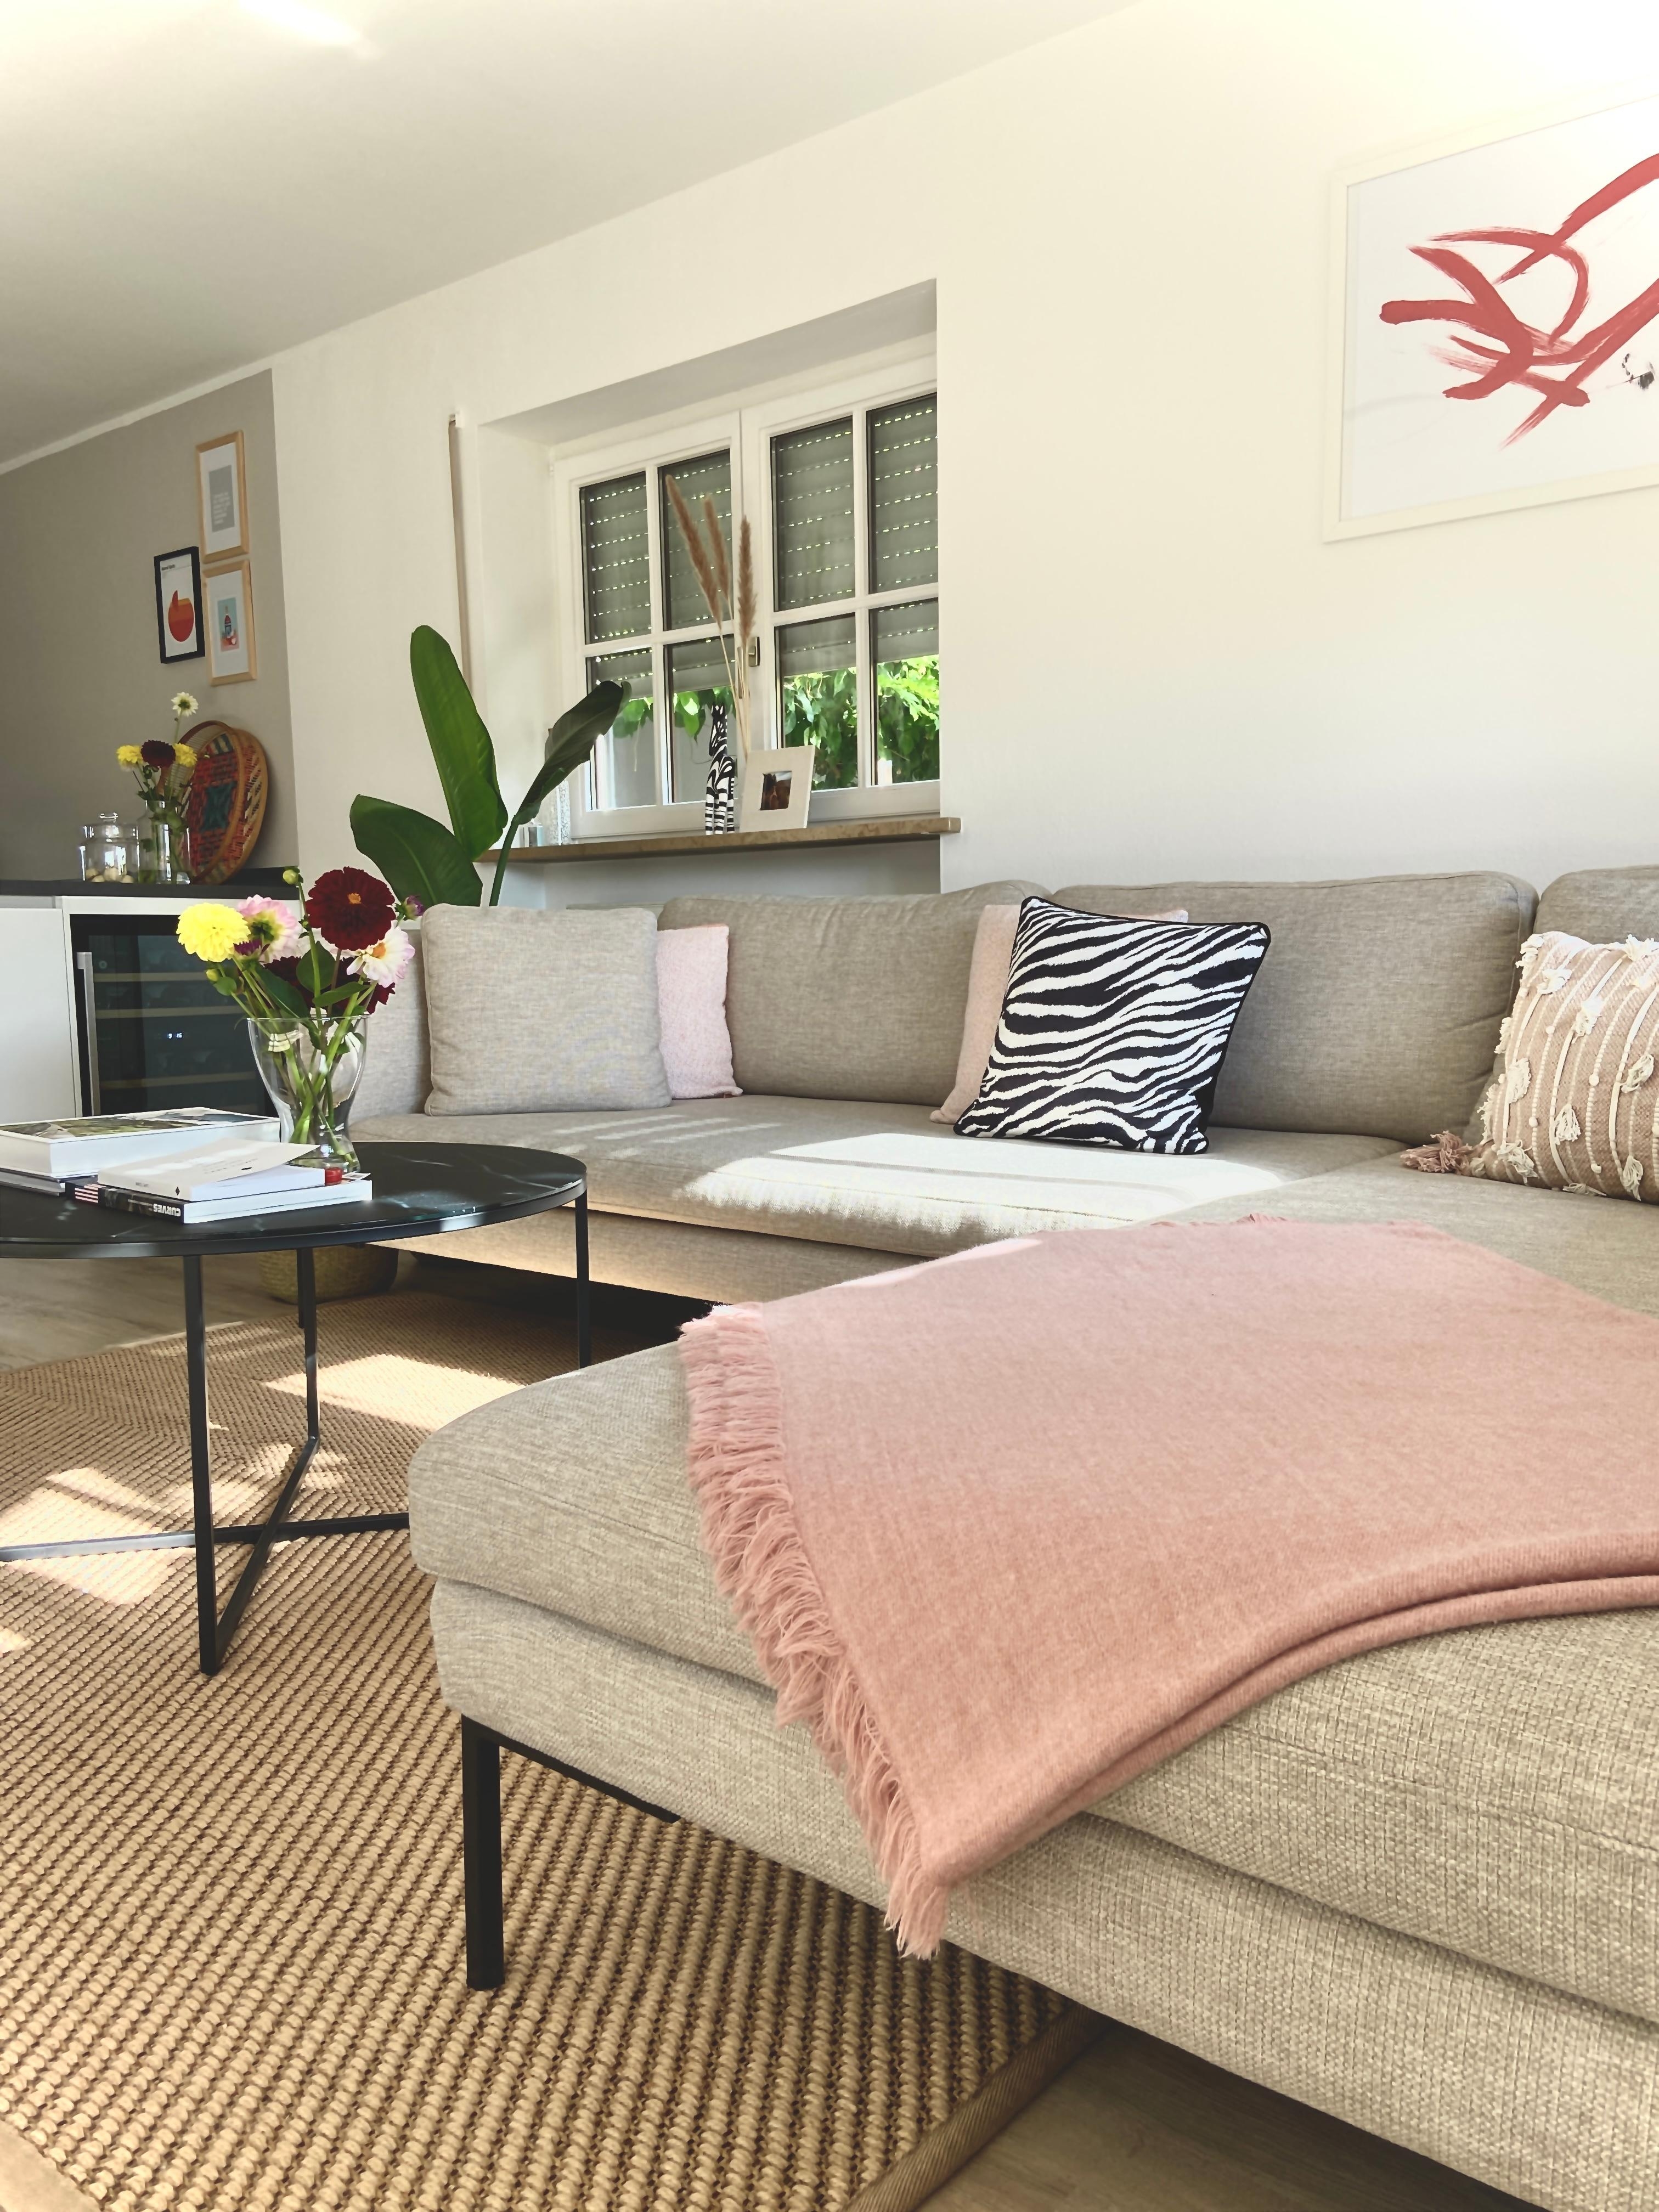 Herzliche Willkommen in unserem #Wohnzimmer 🛋
#livingchallenge #couchstyle #couchliebt #hausumbau #lieblingsplatz 